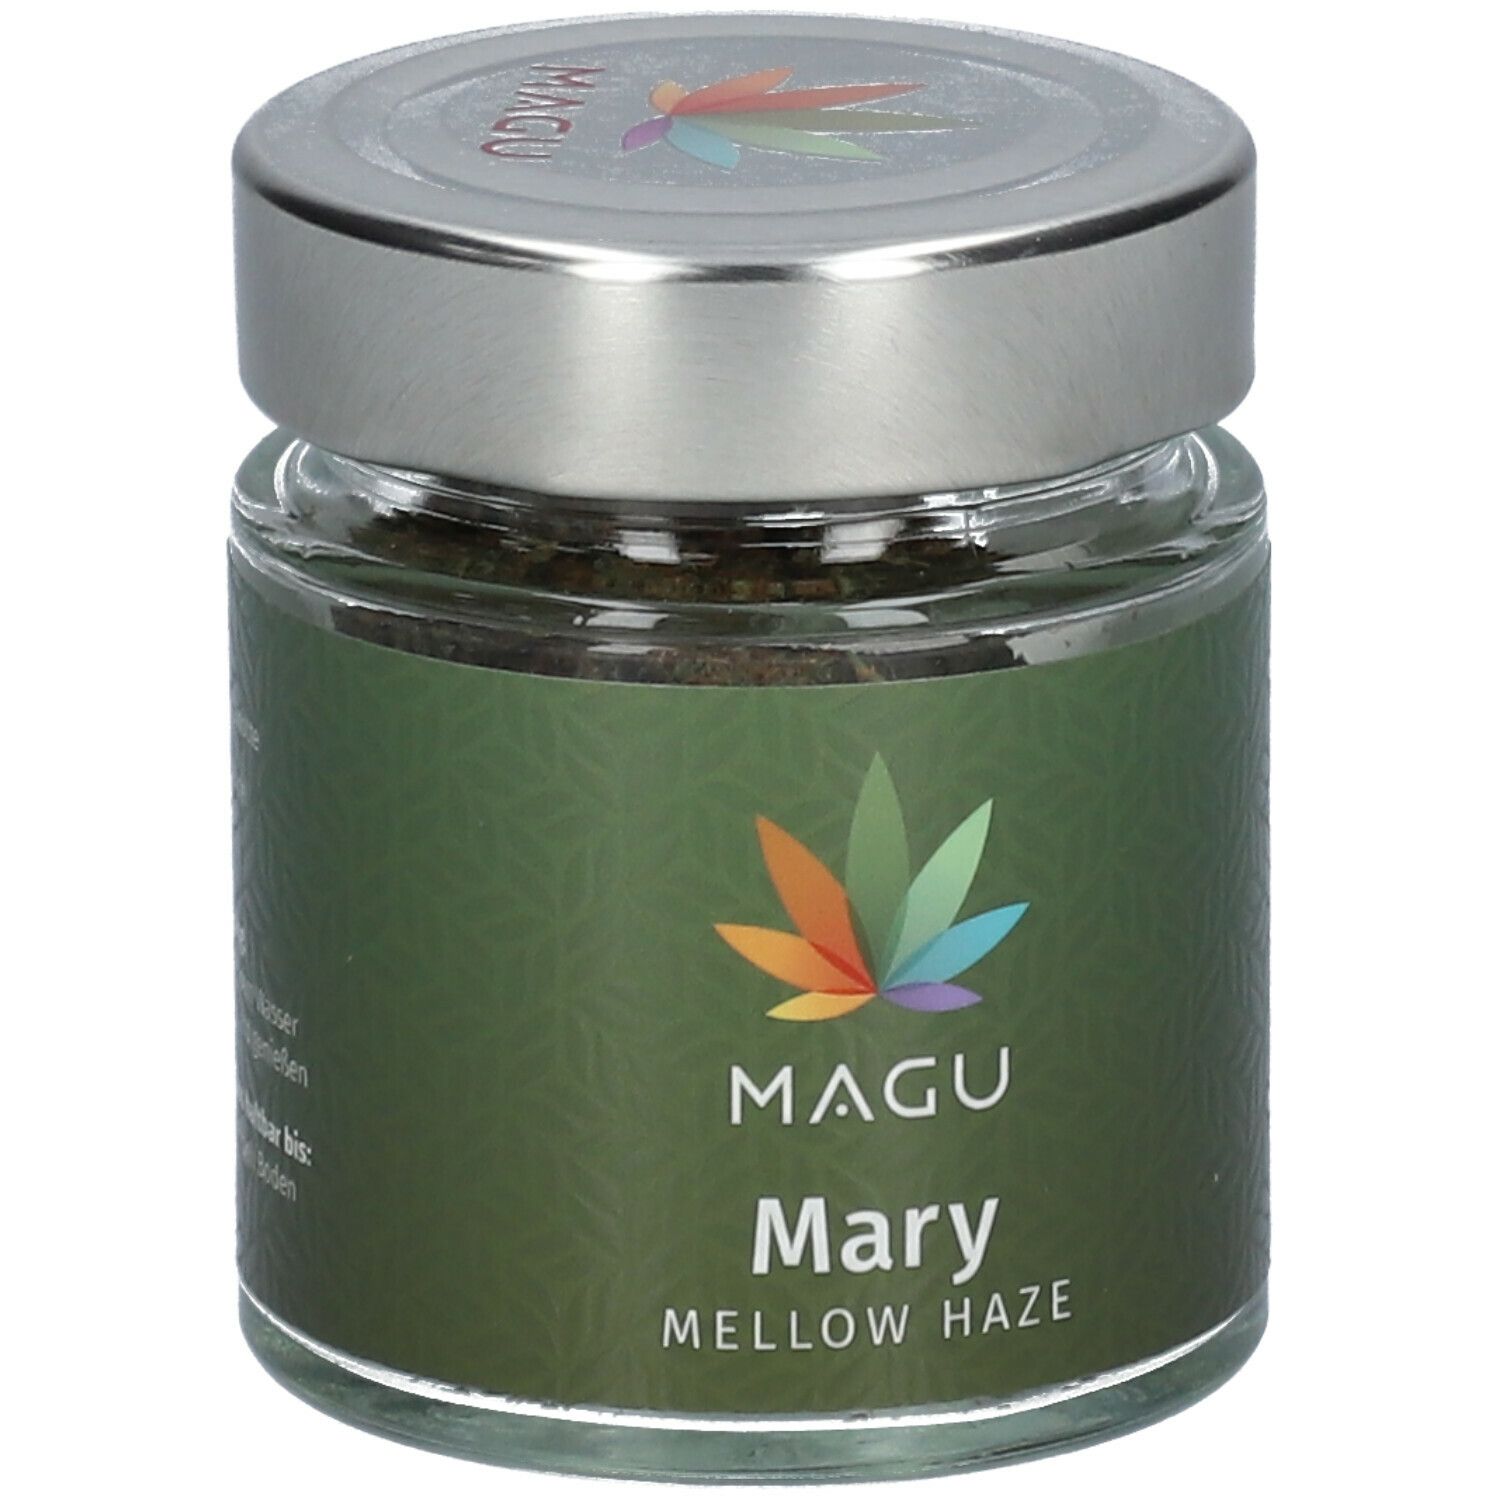 MAGU Mary Mellow Haze